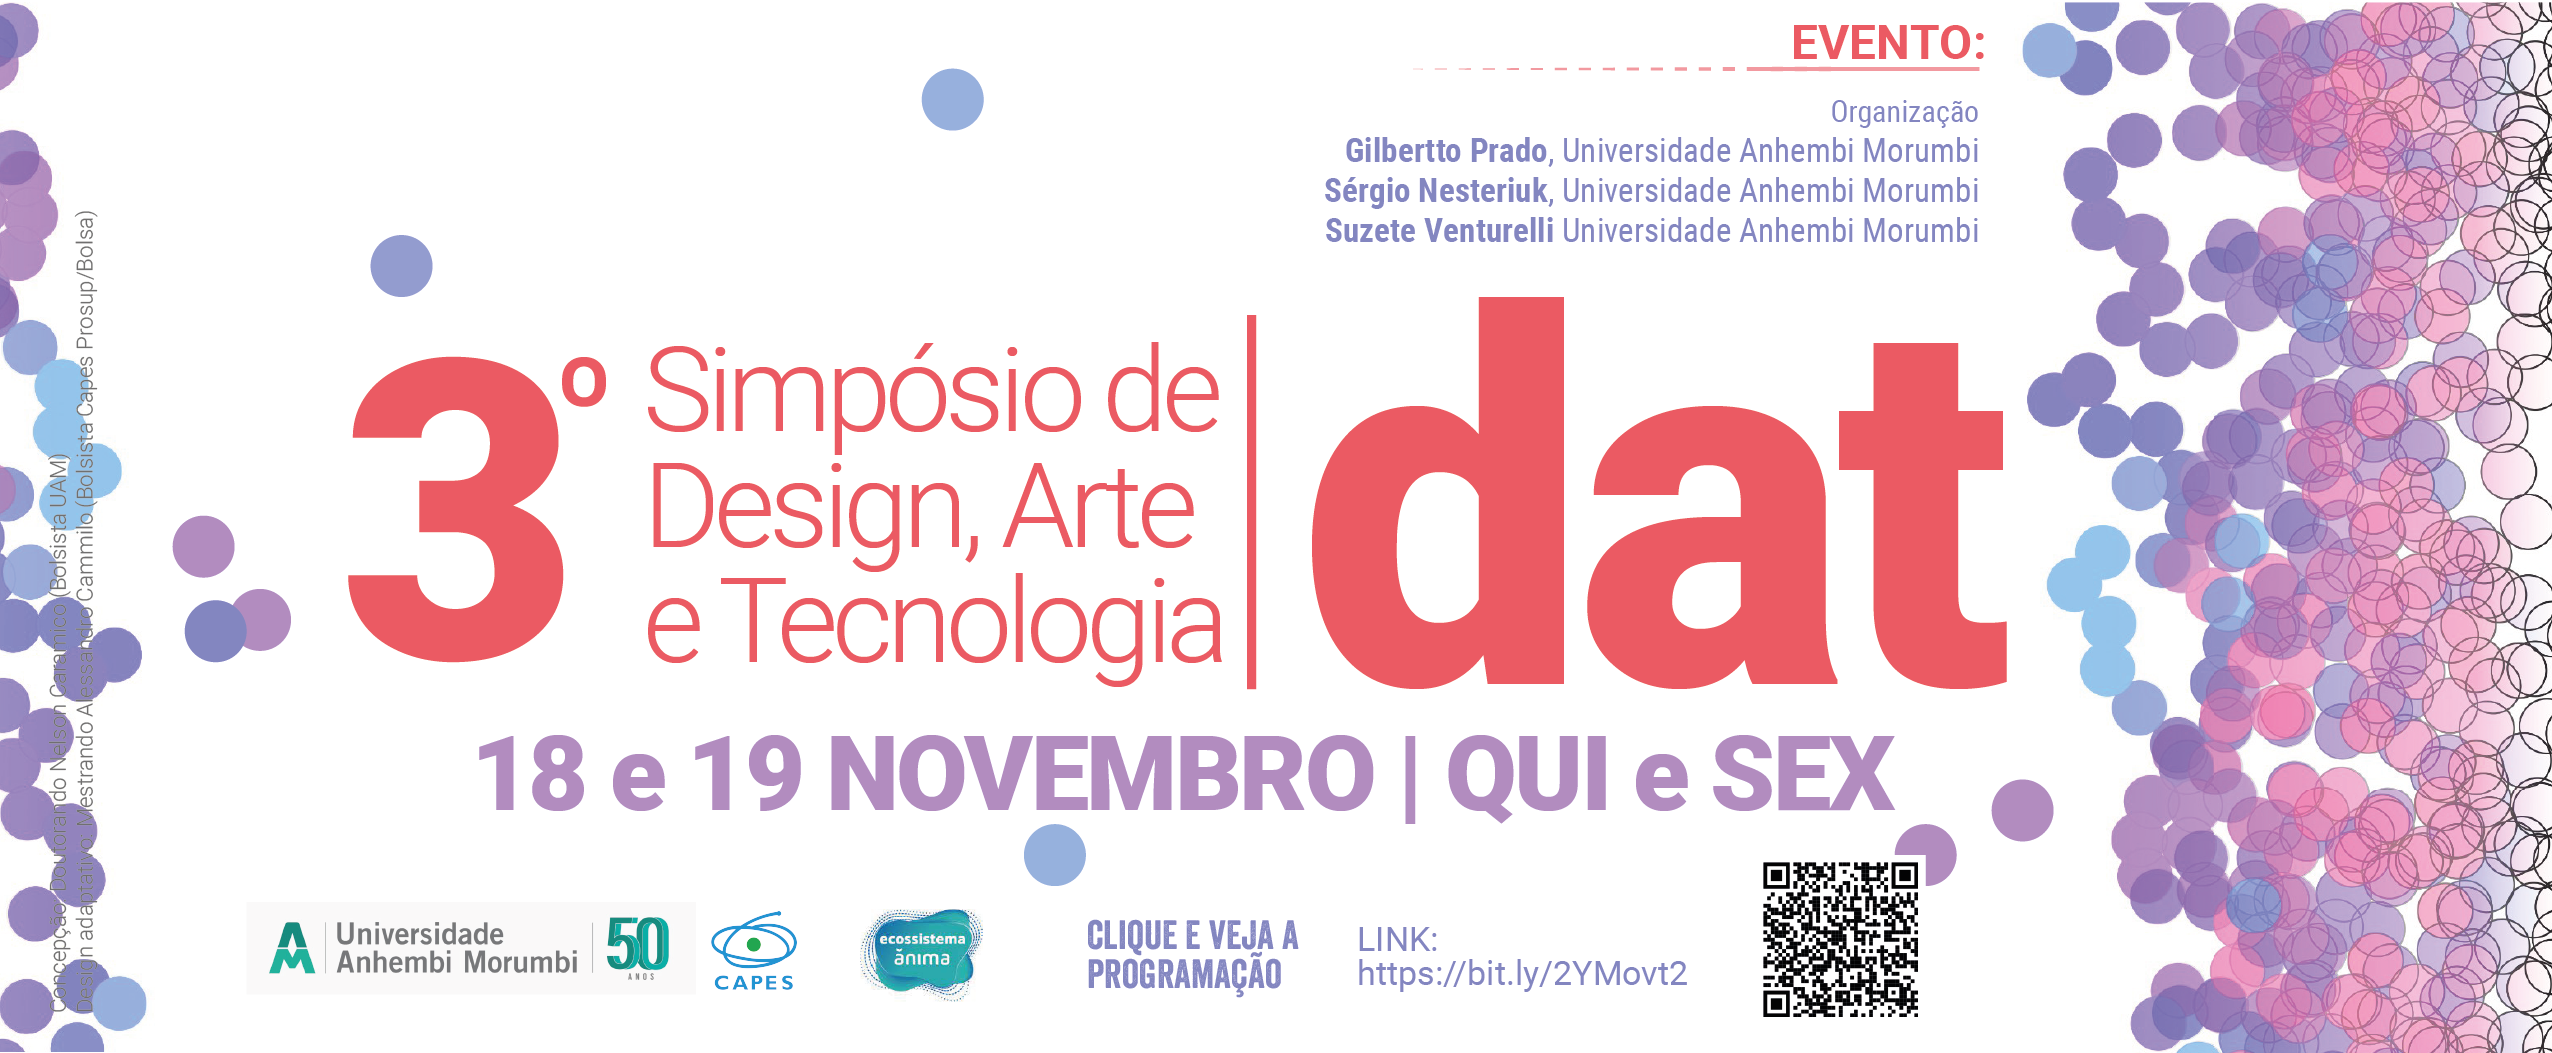 Banner - 3 Simposio DAT - Design Arte e Tecnologia